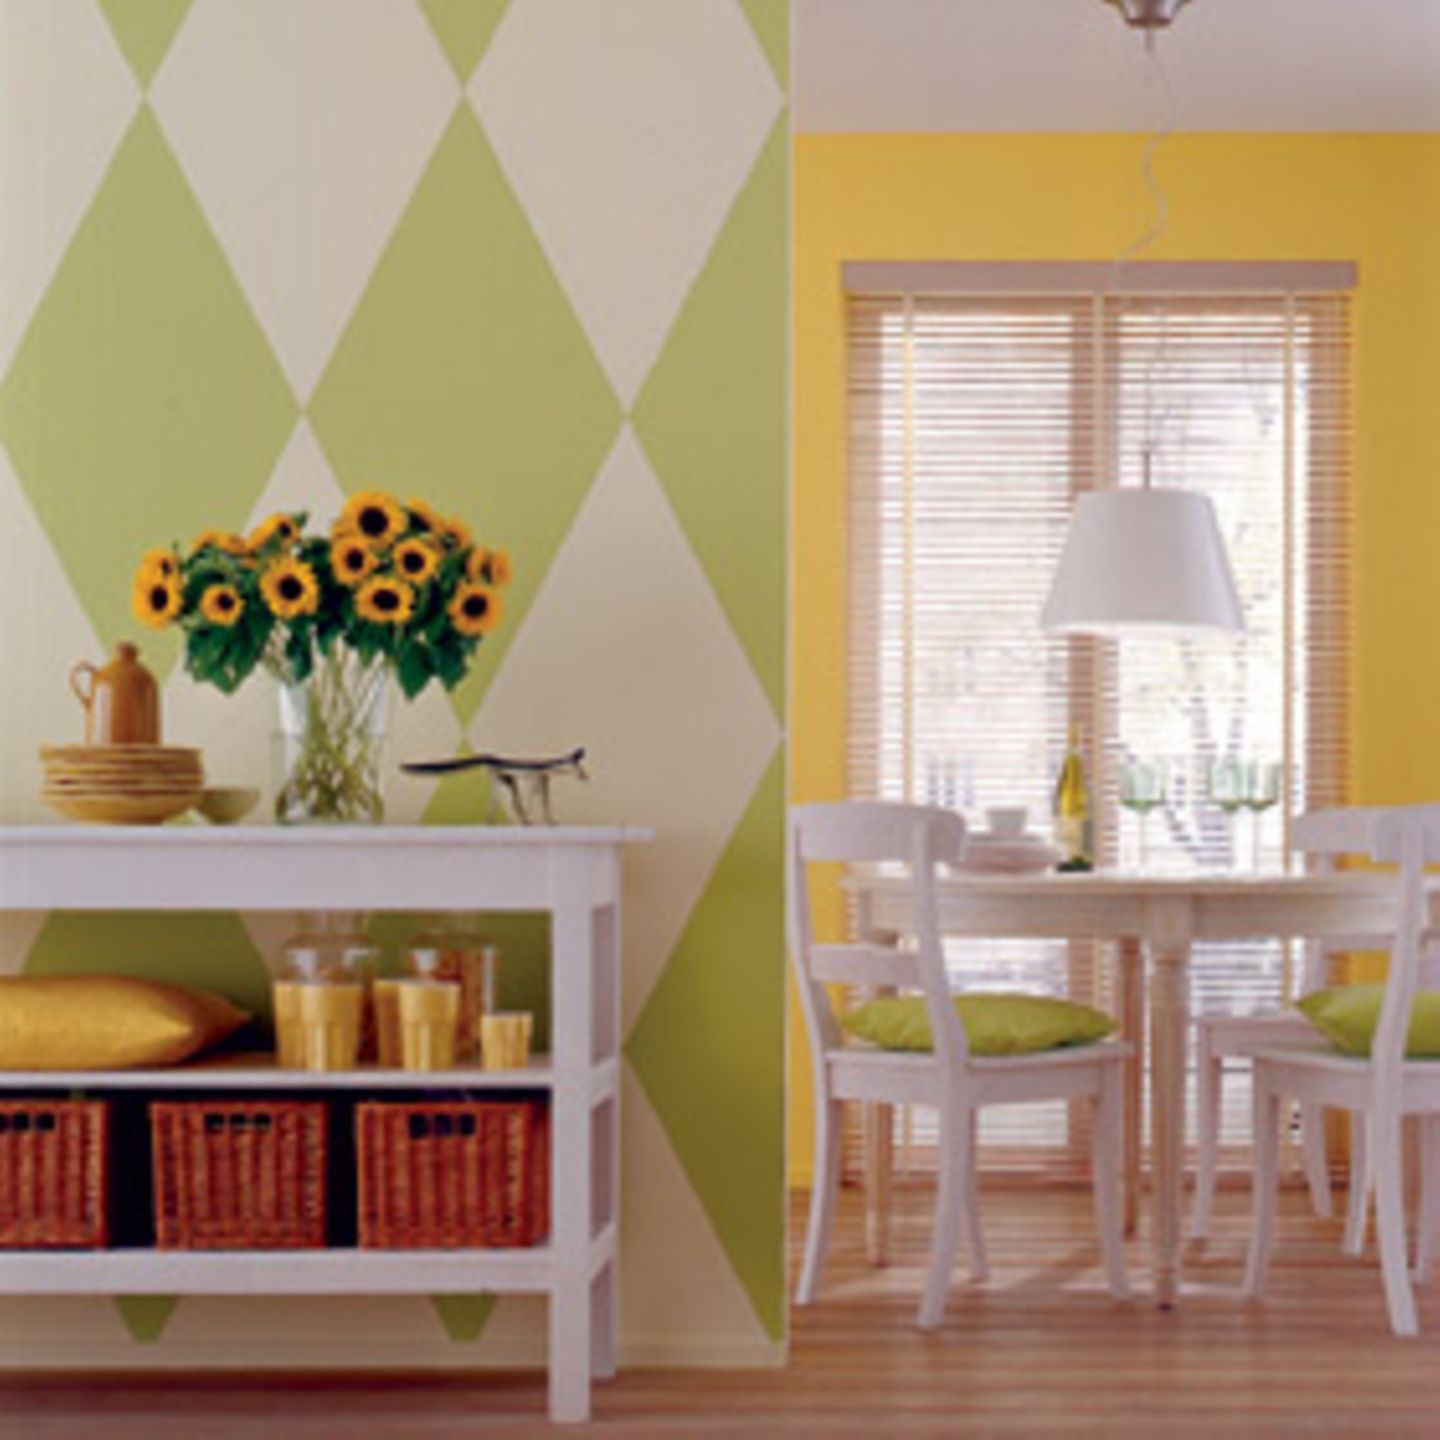 Pastelltöne Frische Farben wie "Farn", "Melone" und "Limone" sorgen dafür, dass in der Wohnung das ganze Jahr über Frühlingsstimmung herrscht. Denn helle Gelb- und Grüntöne assoziieren wir mit Licht, Wachstum und Neubeginn. Eine gewagte Formenkombination bei dezenter Farbwahl ist die Wand mit den grafischen Formen in den Tönen "Farn" und "Limone".